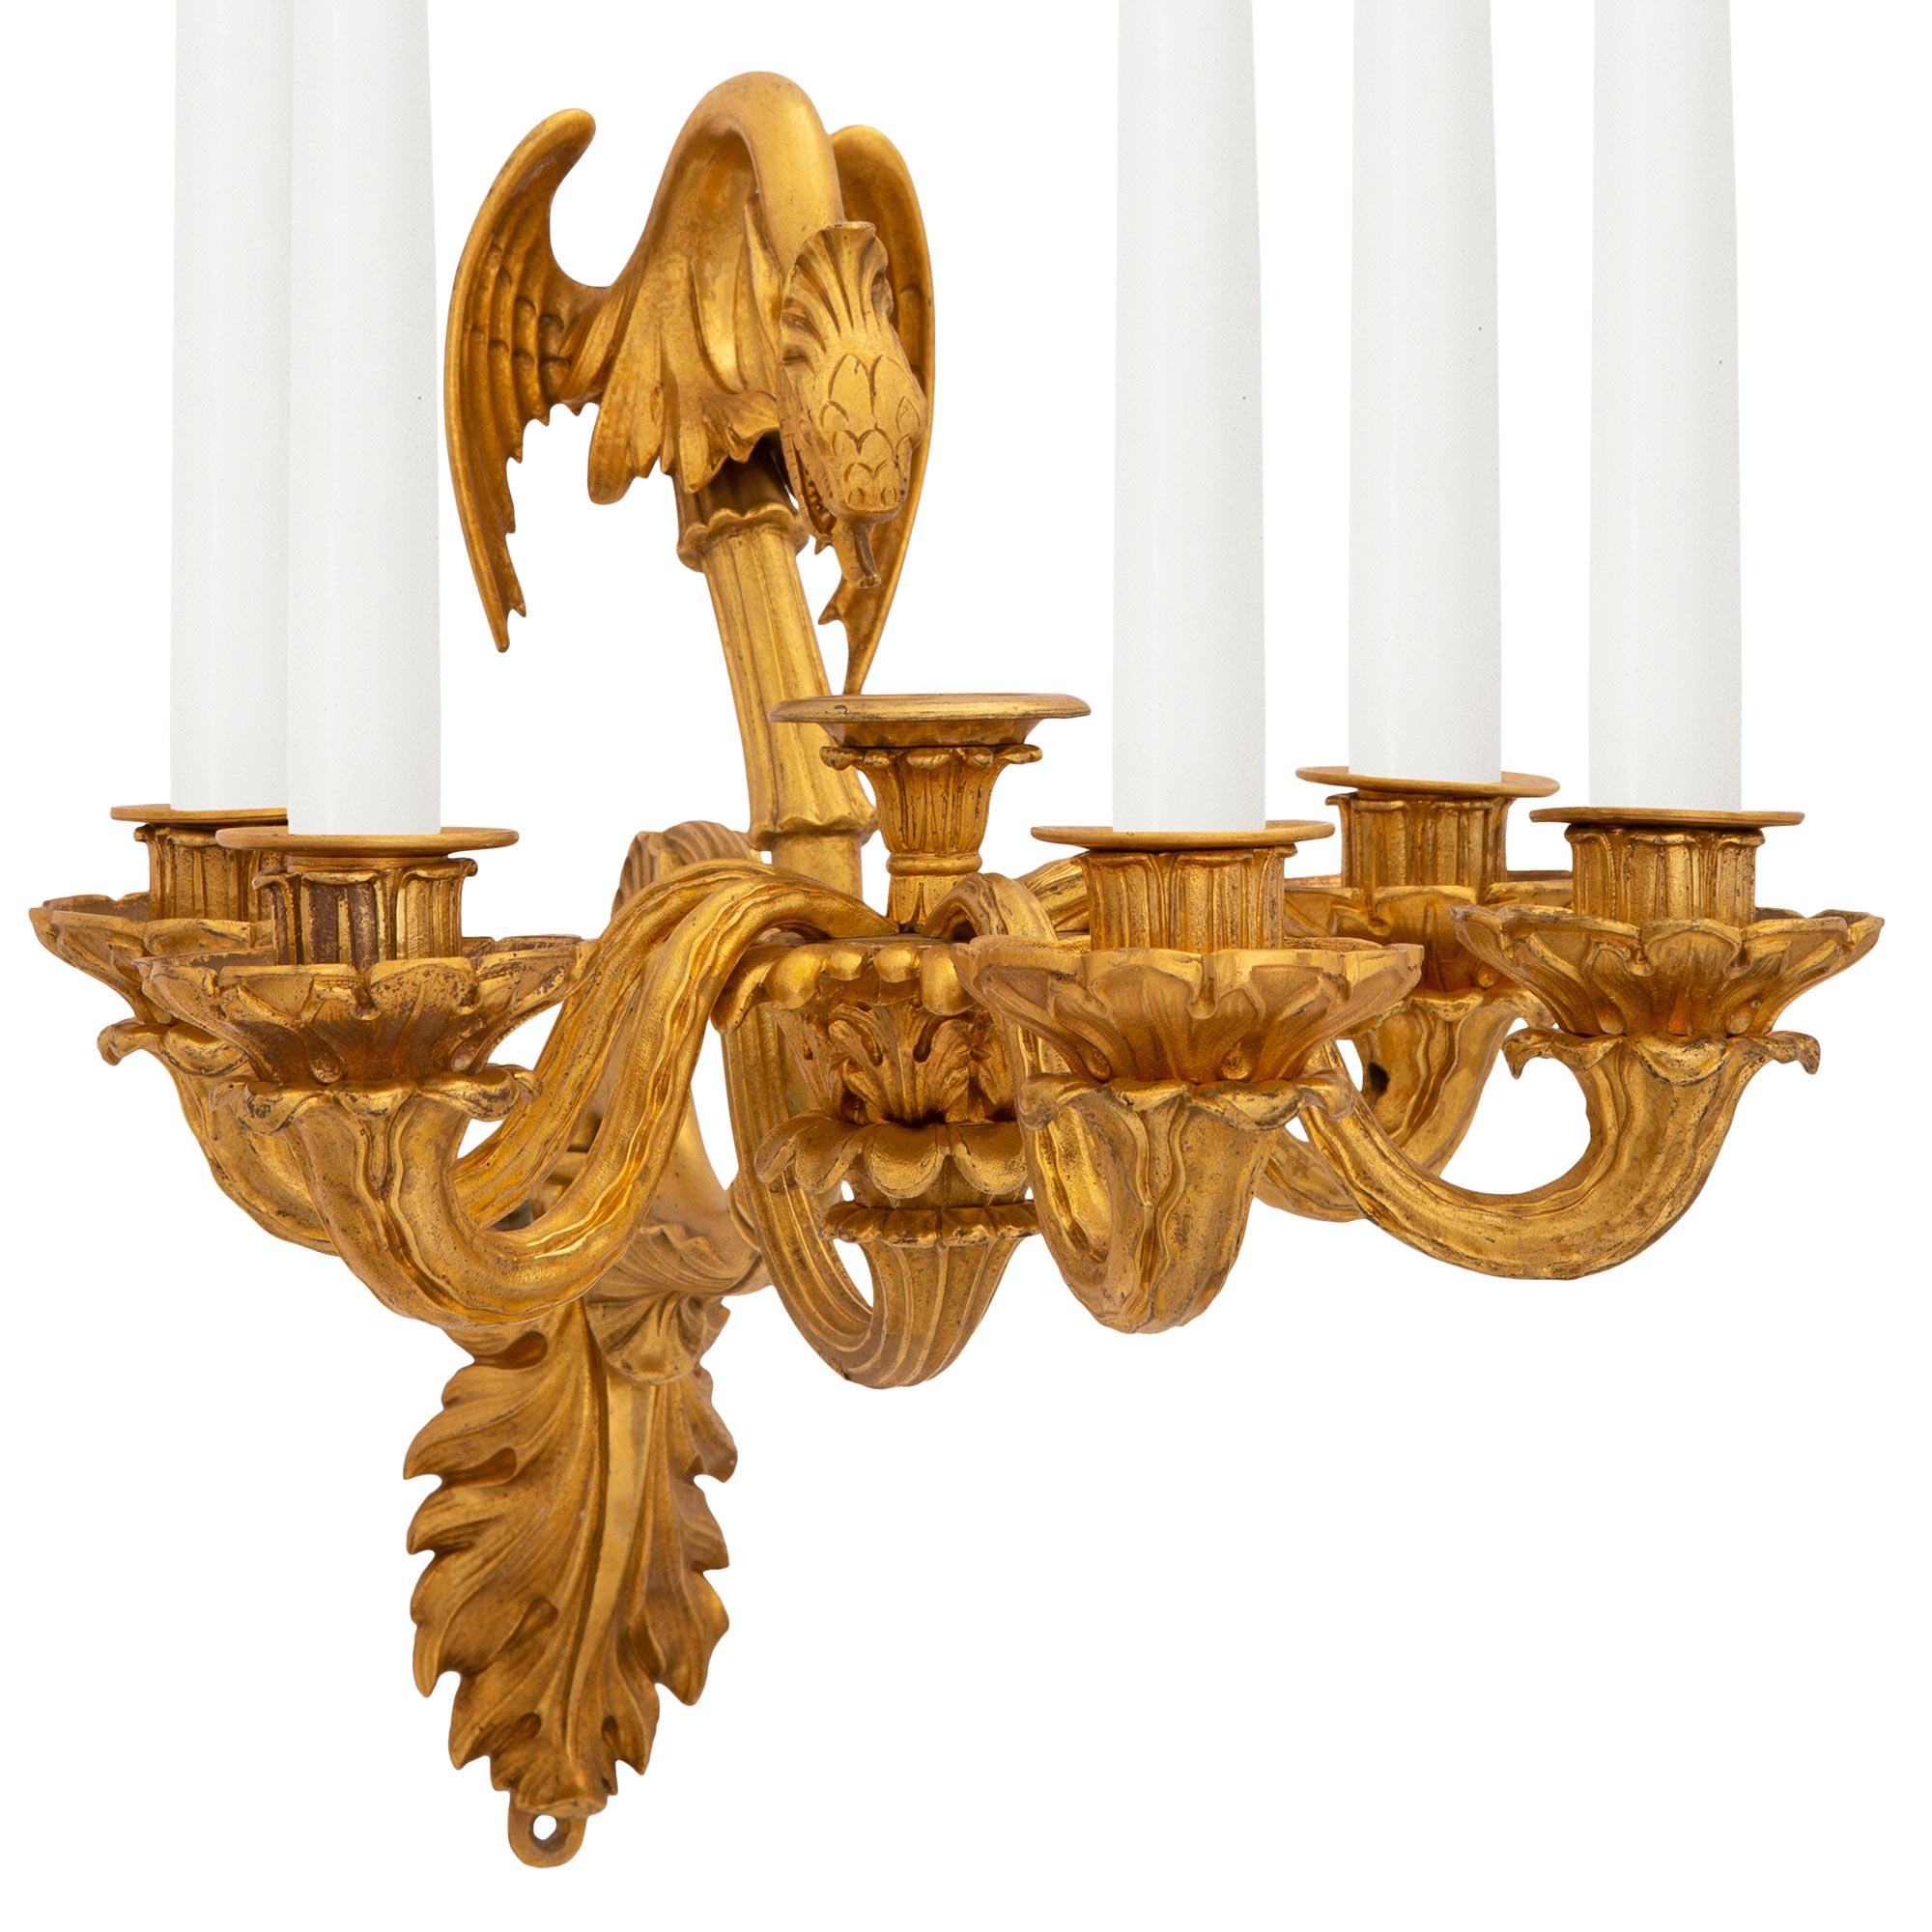 Paire d'appliques néo-classiques en stuc et bronze doré de grande qualité, datant du XIXe siècle. Chaque applique à cinq bras est centrée par une exceptionnelle plaque arrière feuillagée d'où partent les élégants supports à volutes. Les magnifiques